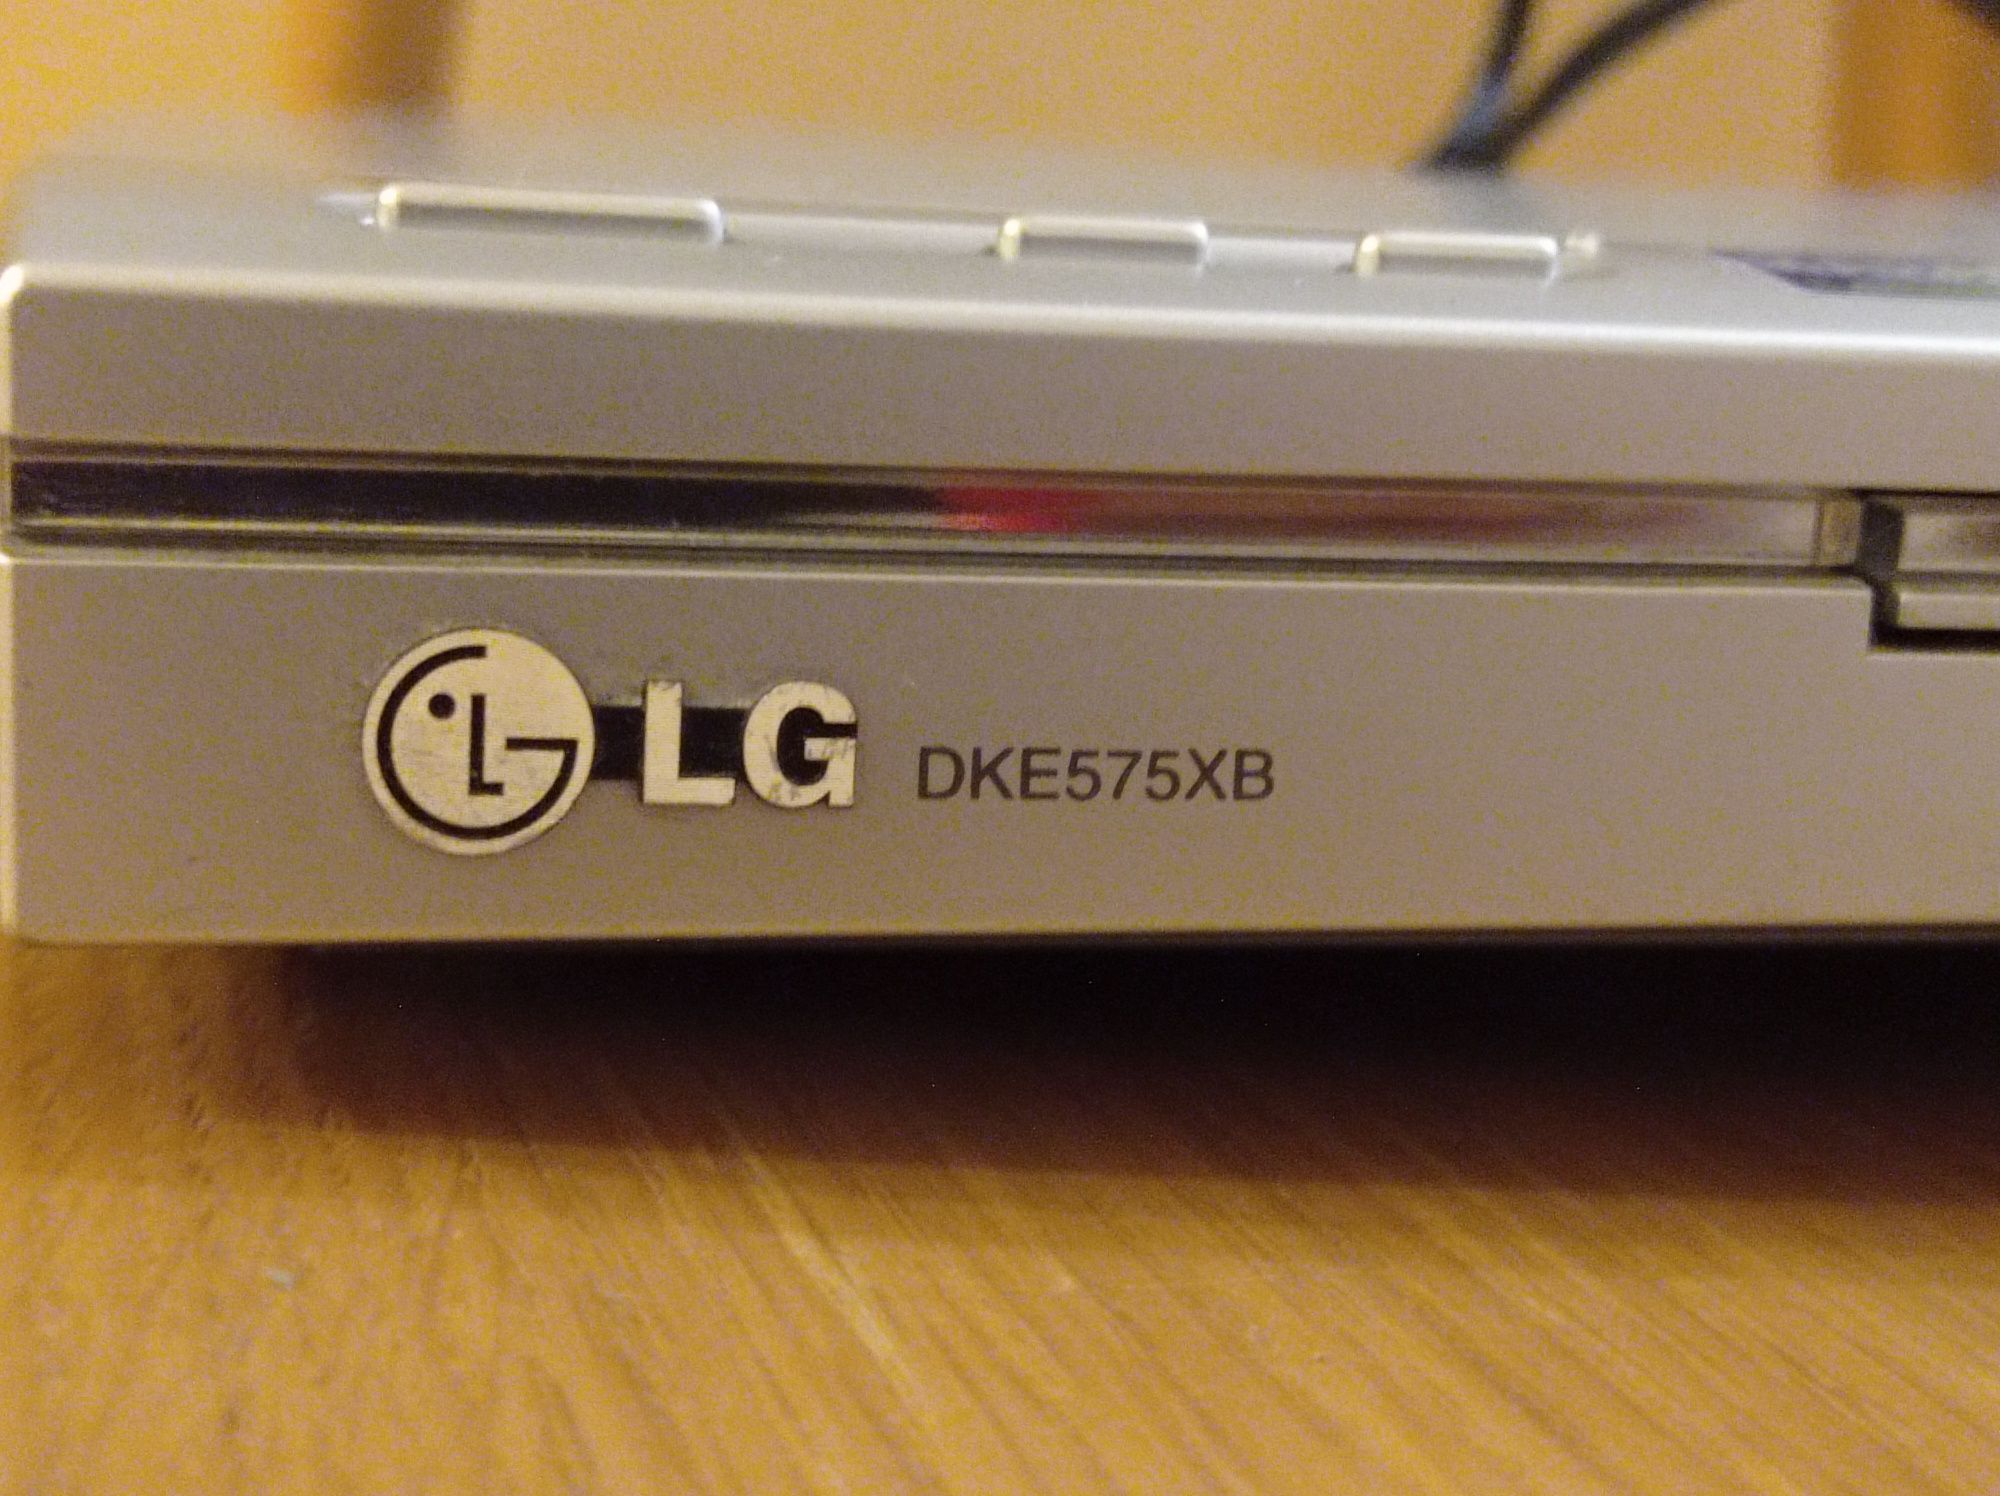 DVD програвач LG DKE575XB (не робочий, на запчастини)